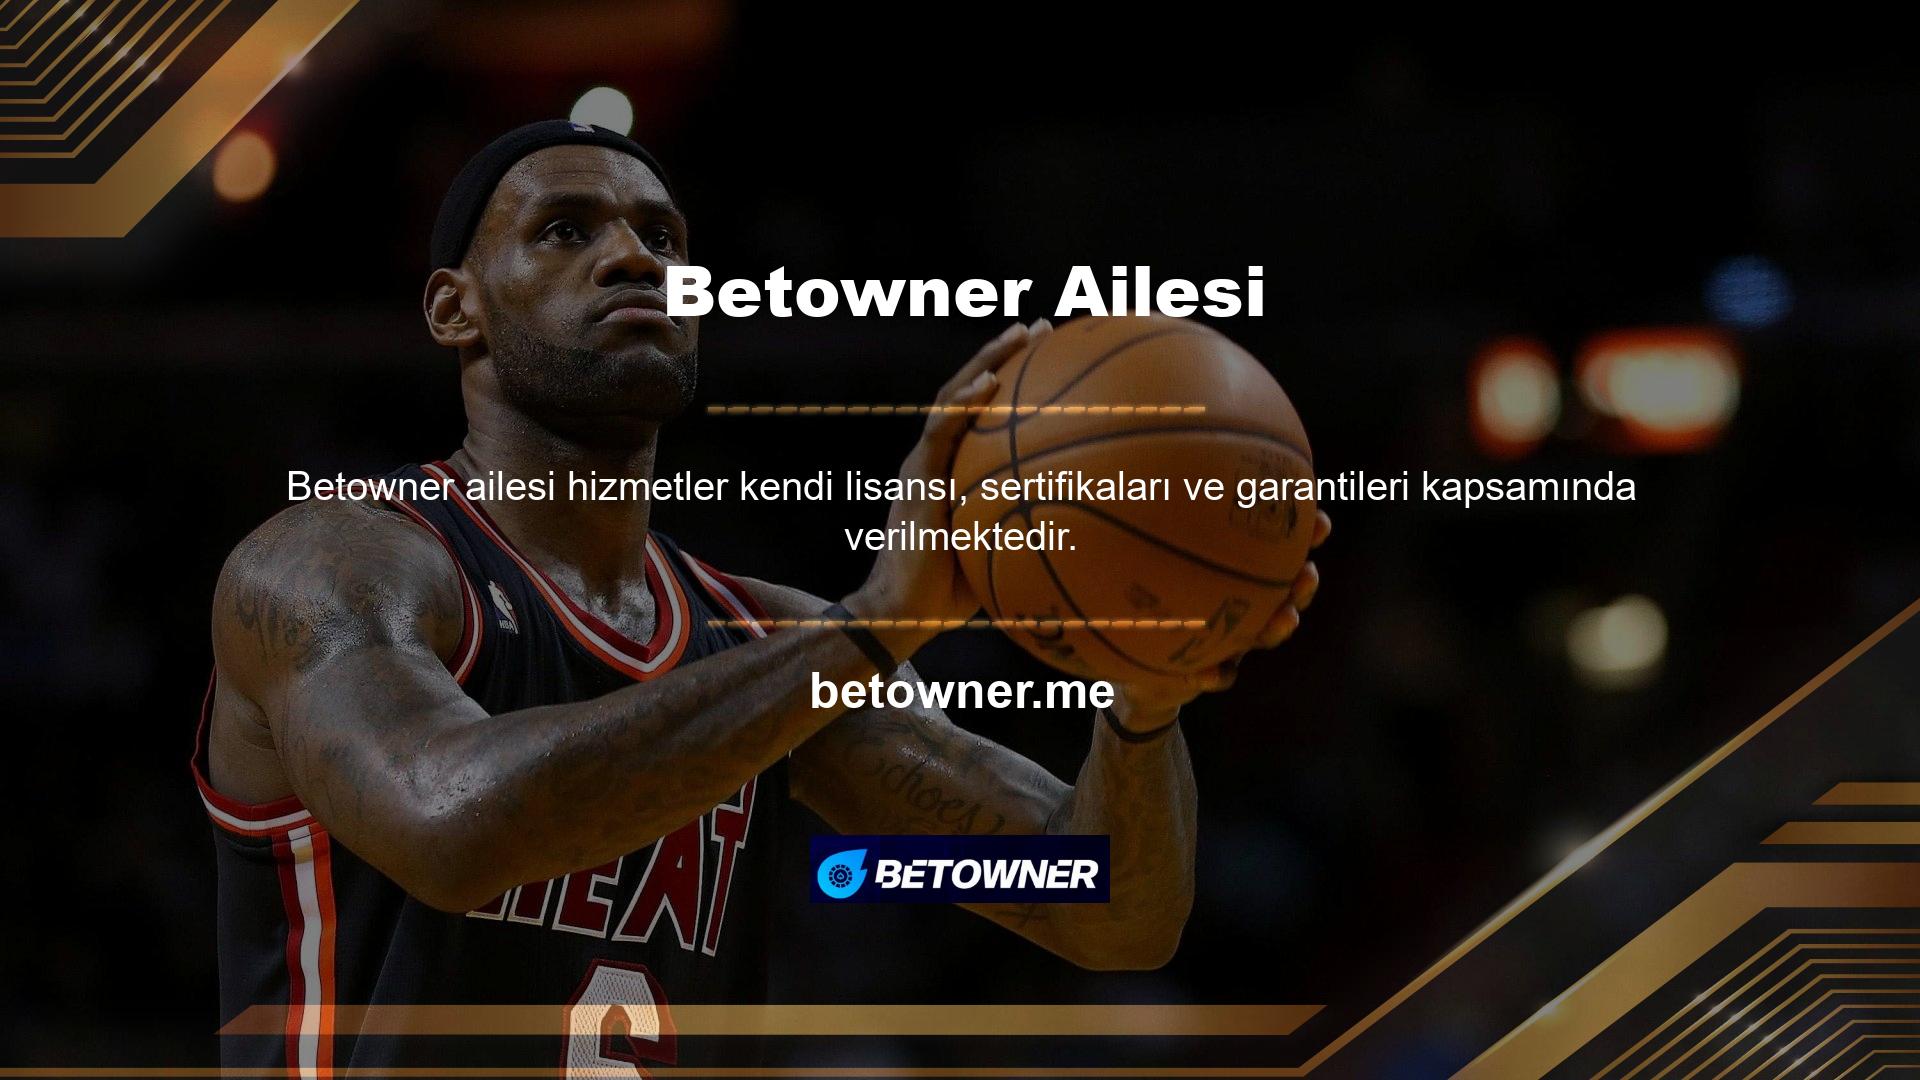 Betowner web sitesinde binlerce oyun seçeneği bulunmaktadır